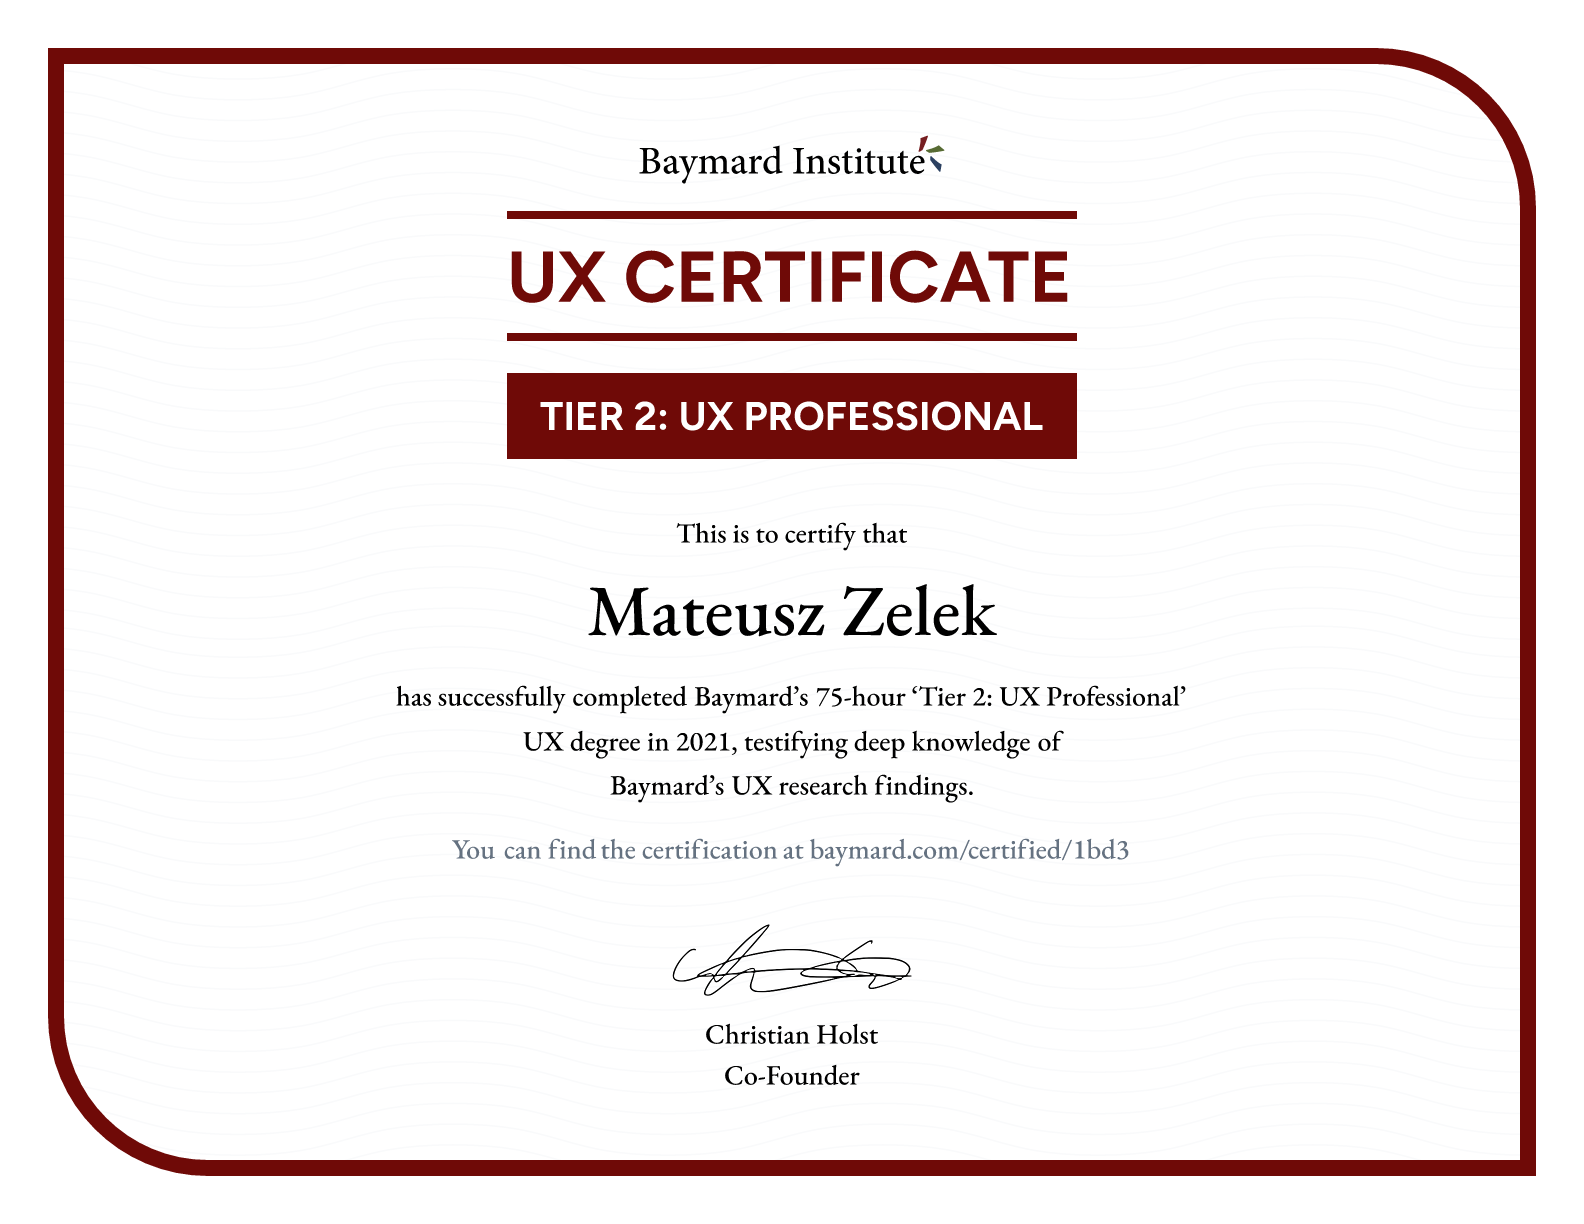 Mateusz Zelek’s certificate